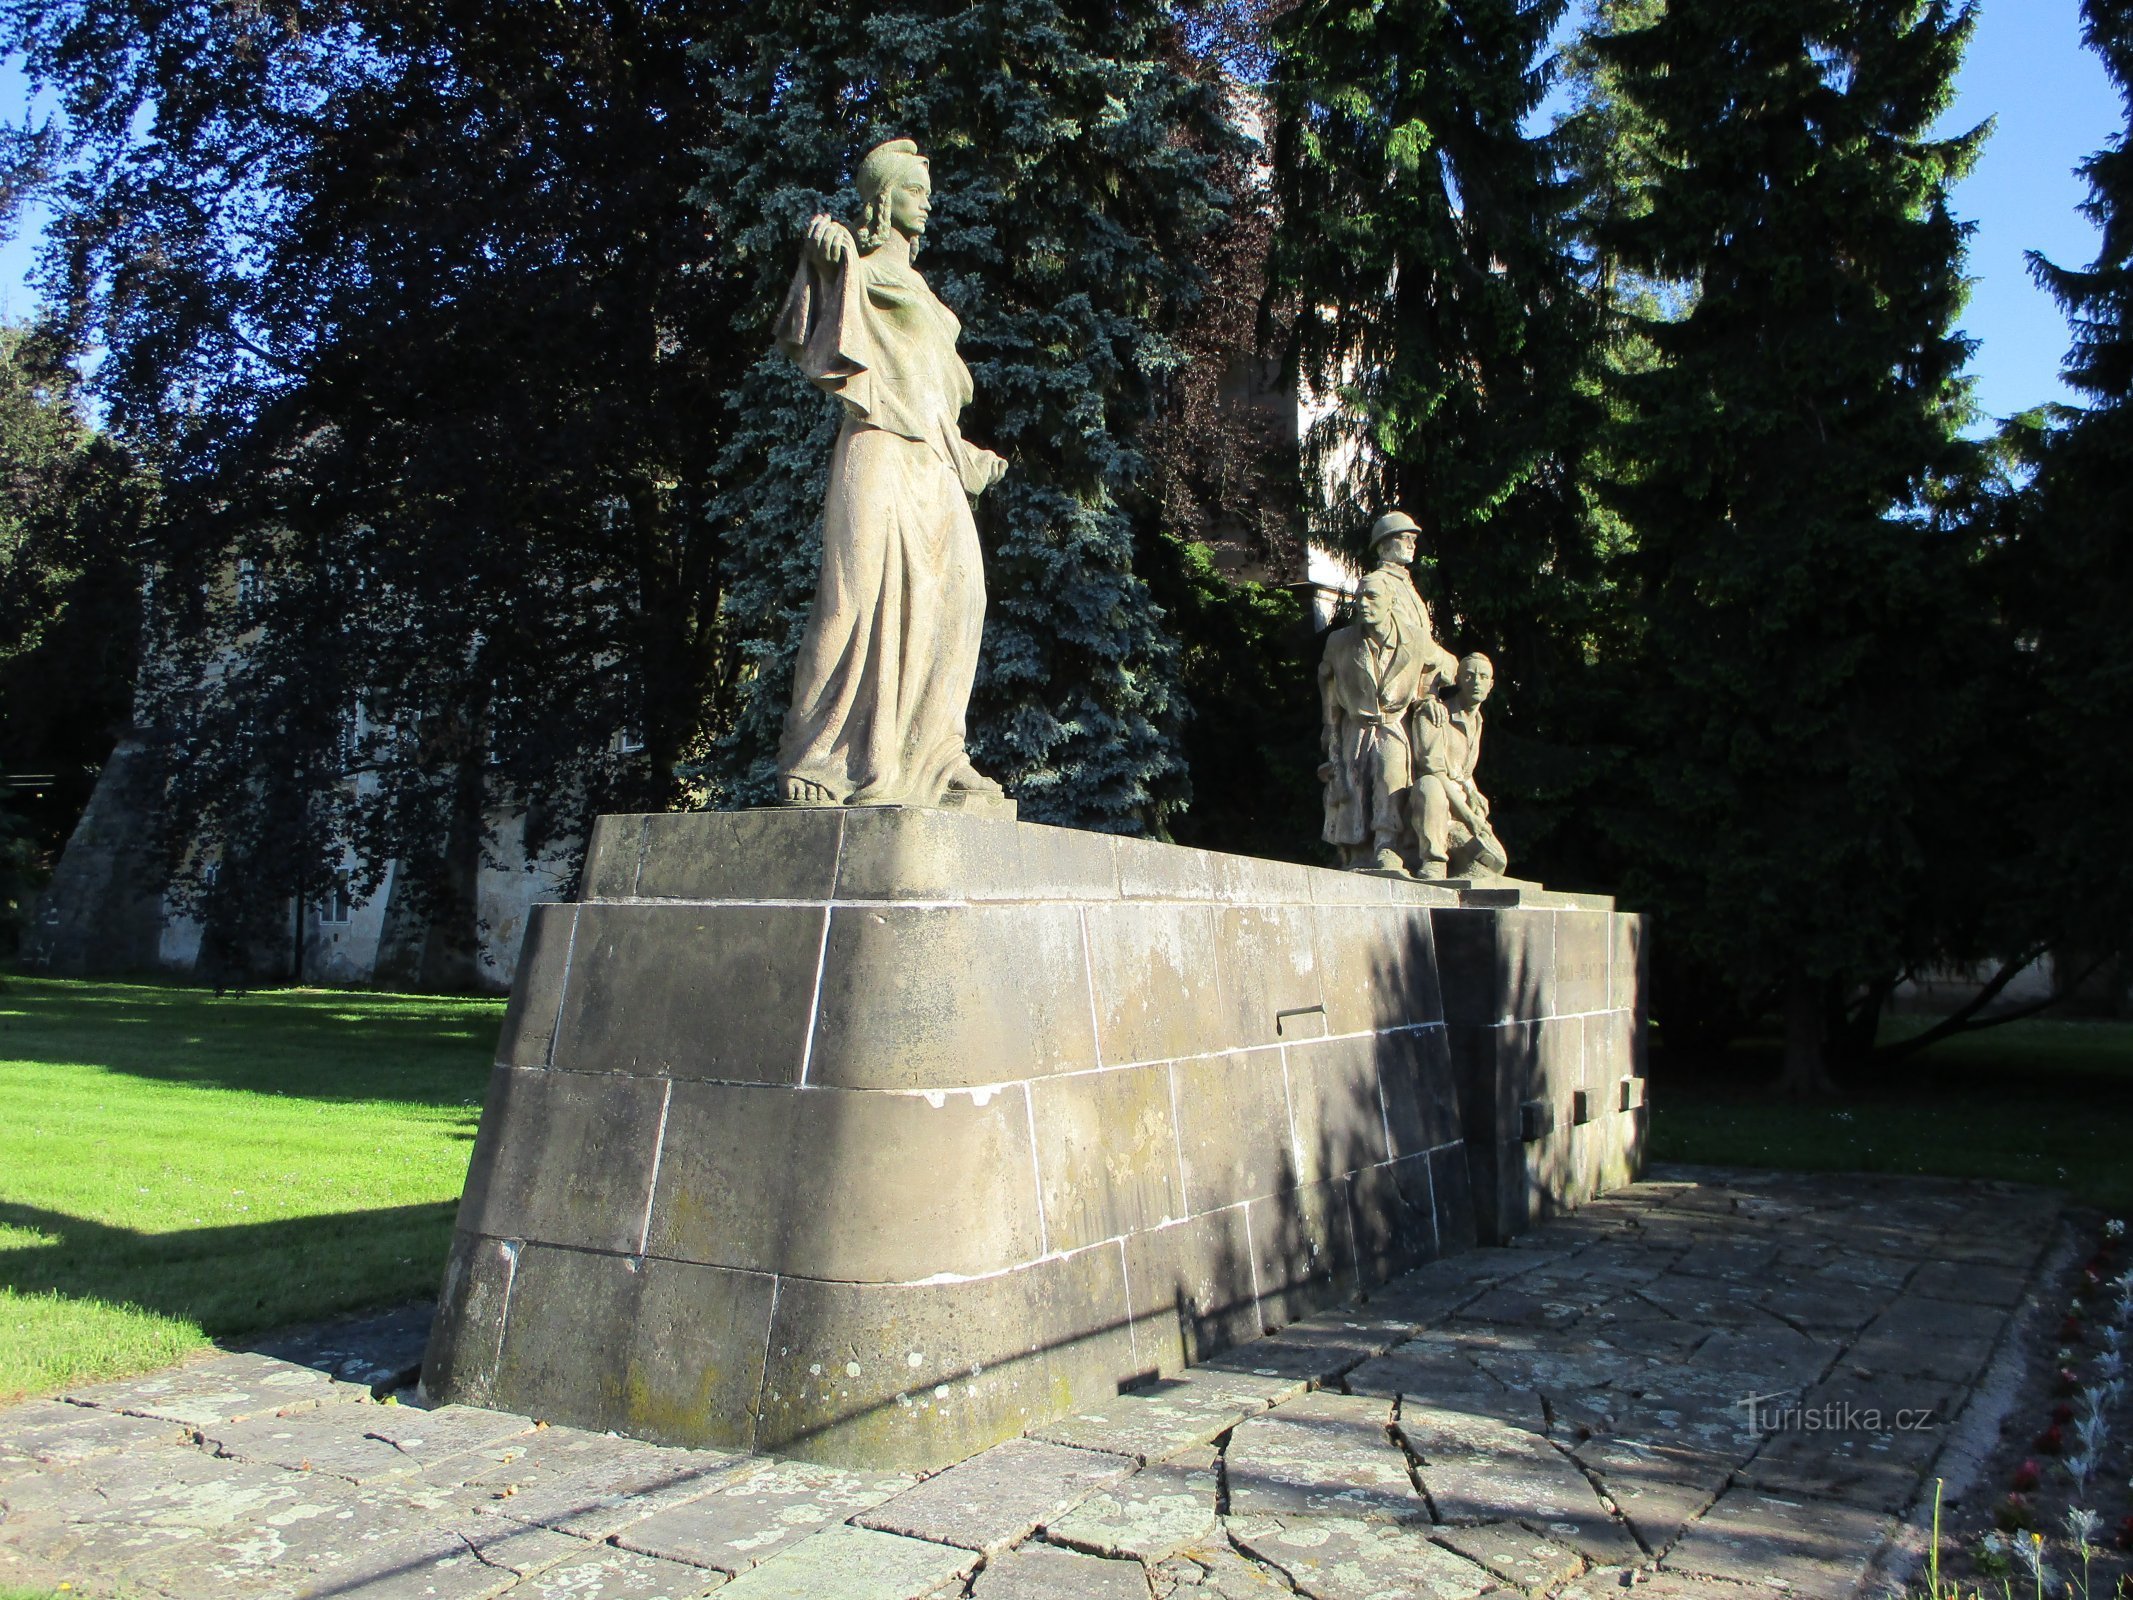 Đài tưởng niệm cuộc kháng chiến và nạn nhân của Thế chiến thứ hai (Smiřice, ngày 2 tháng 2.6.2019 năm XNUMX)